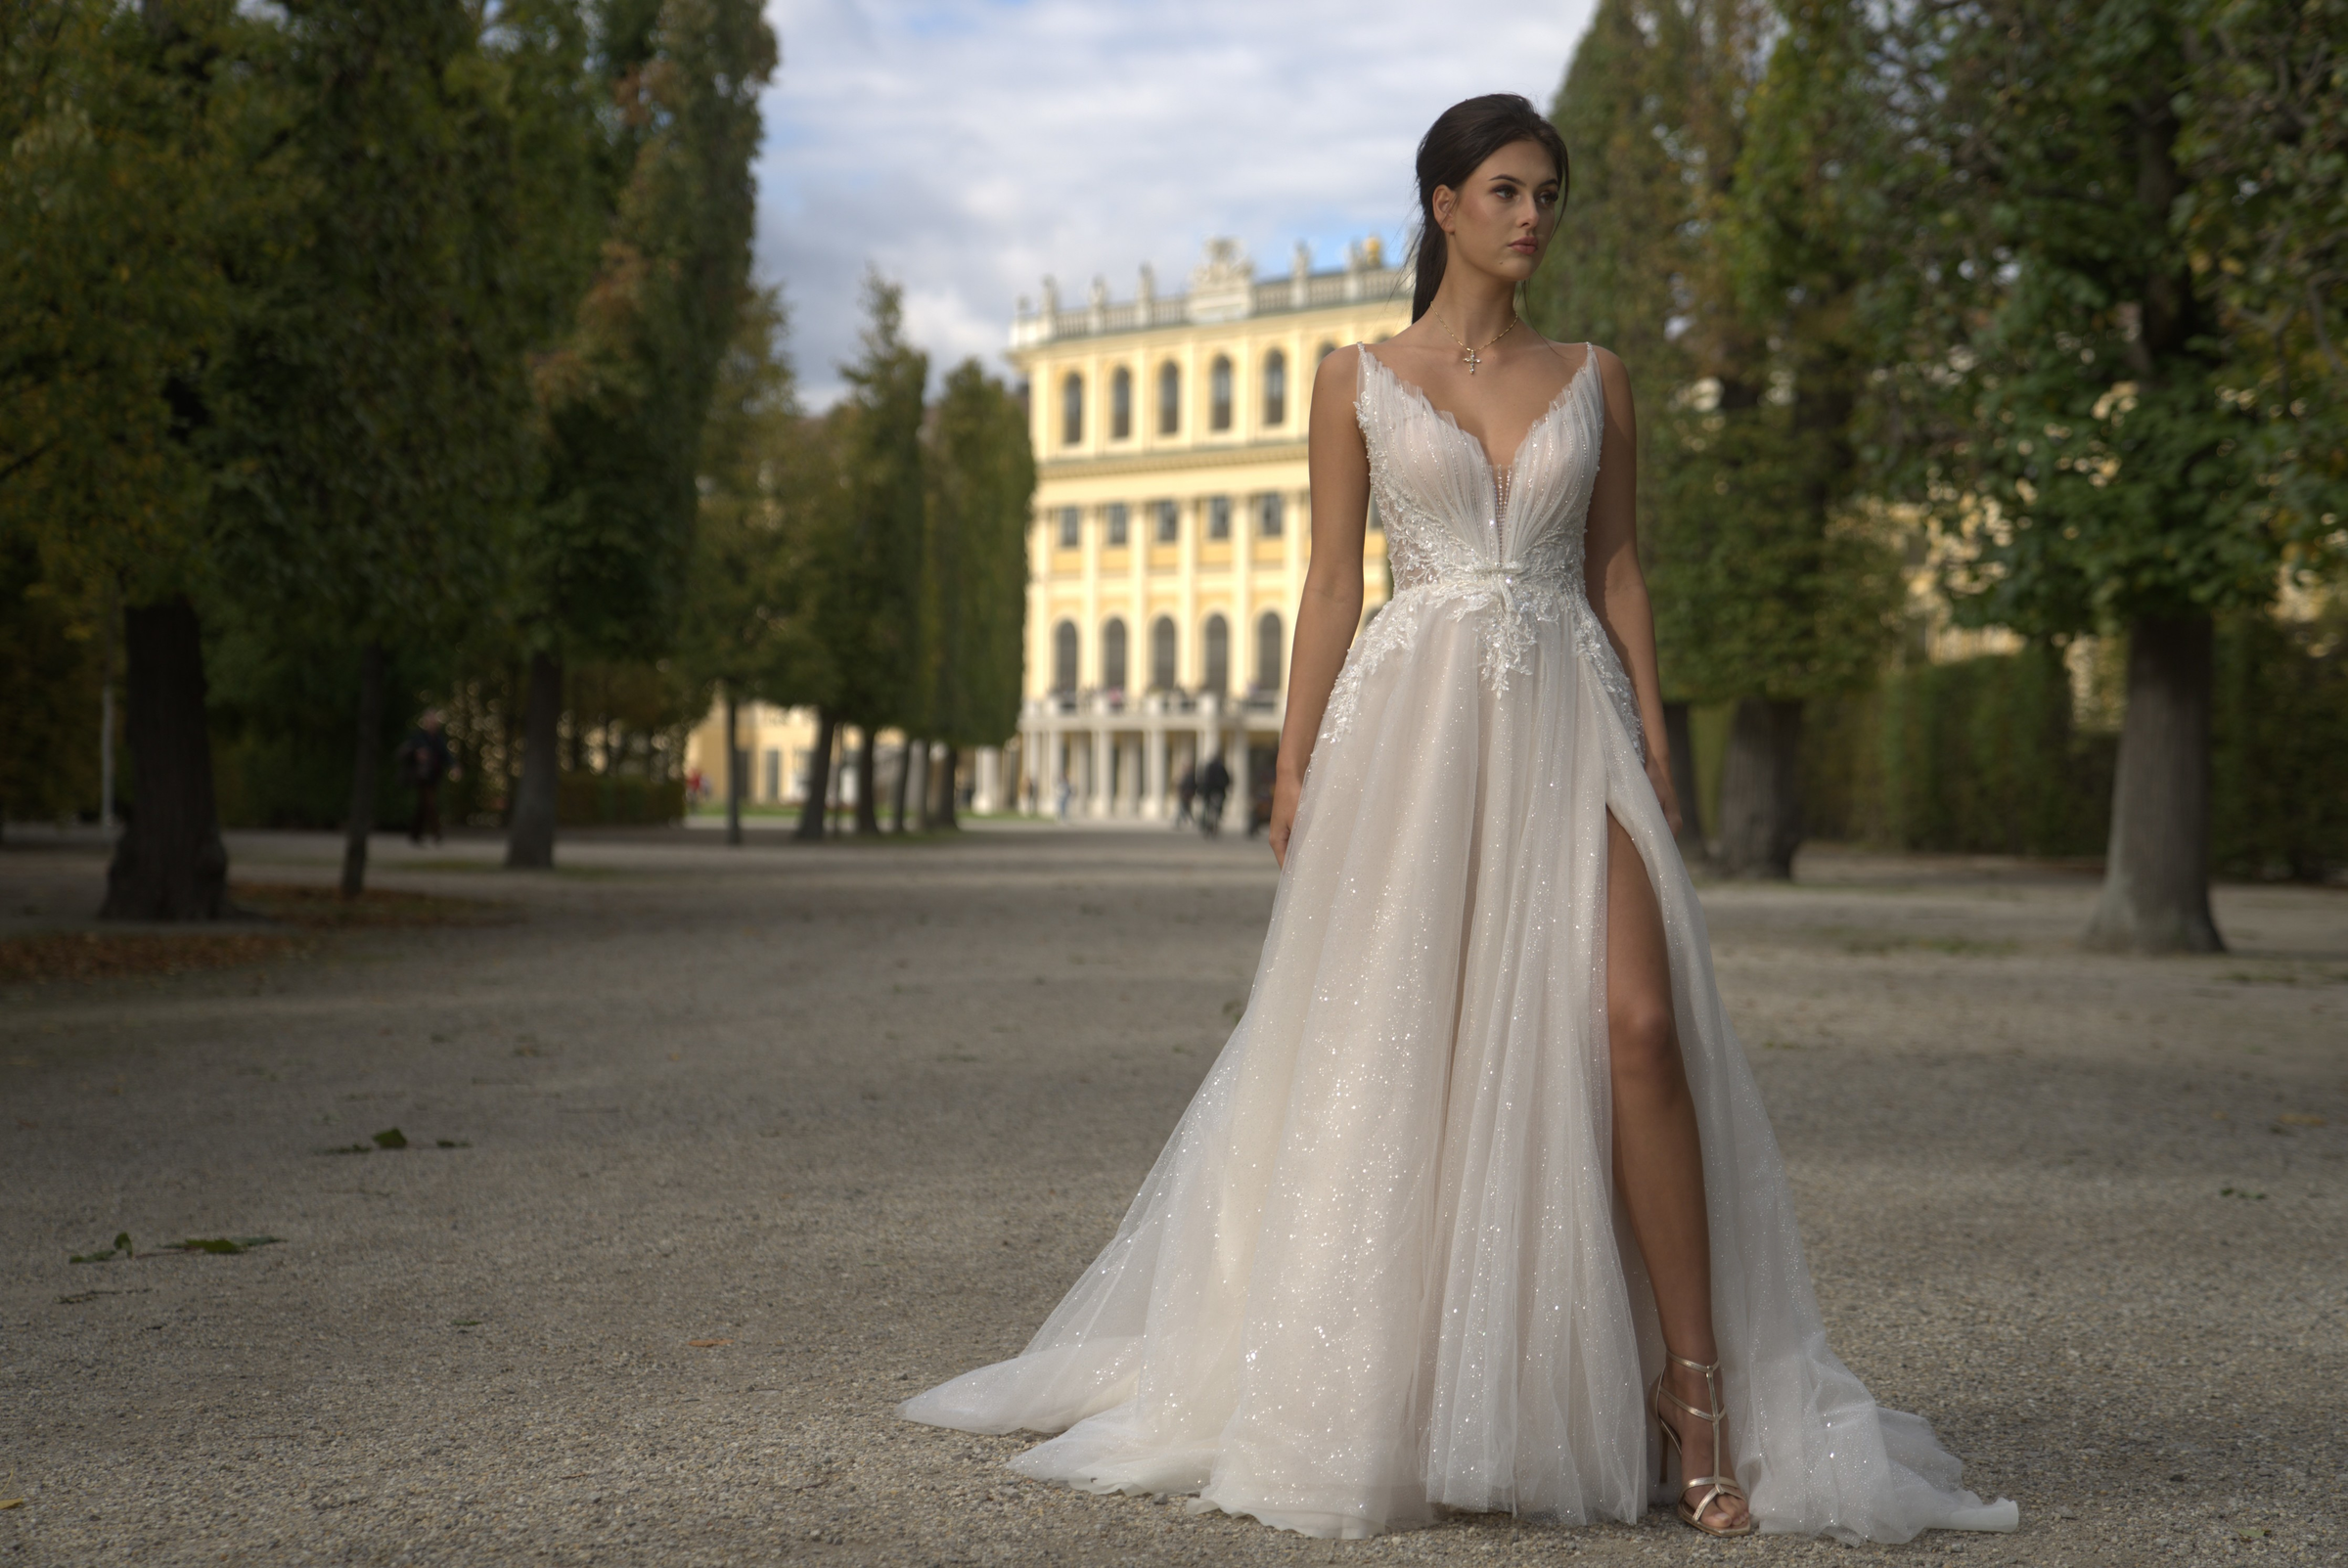 Sparkling A-line wedding dress with side slit